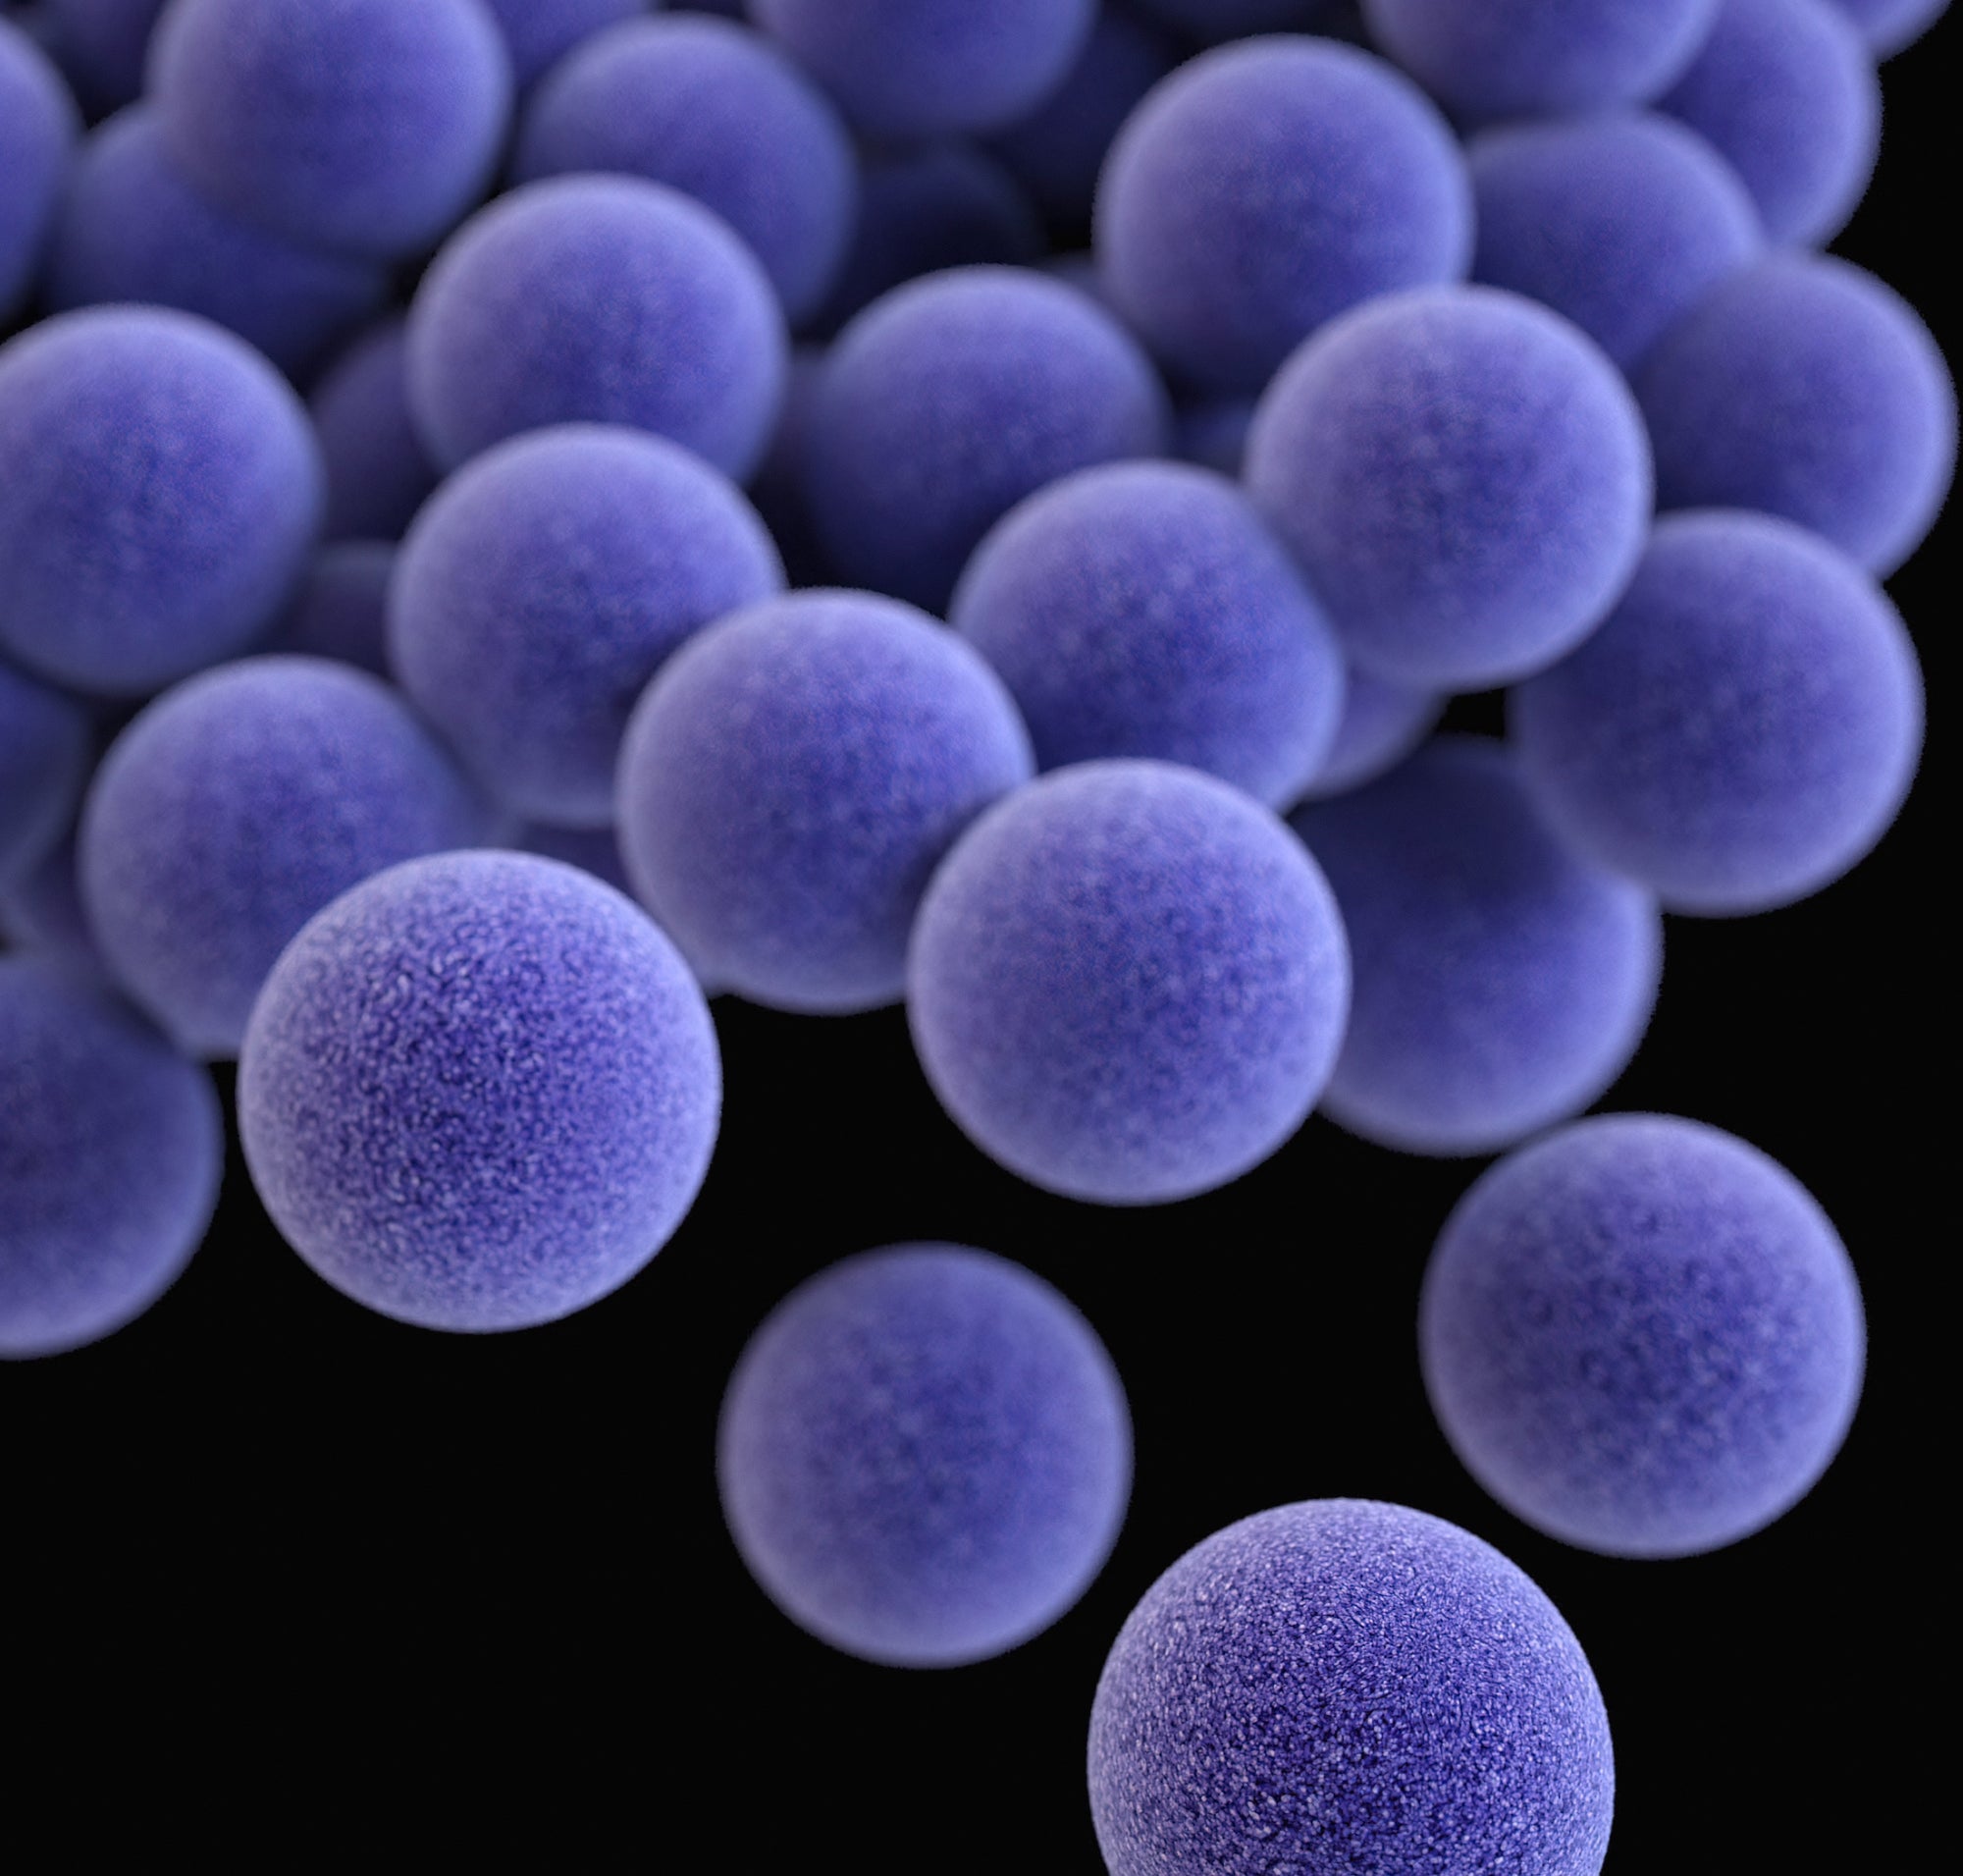 The Science Behind Qiara Probiotics